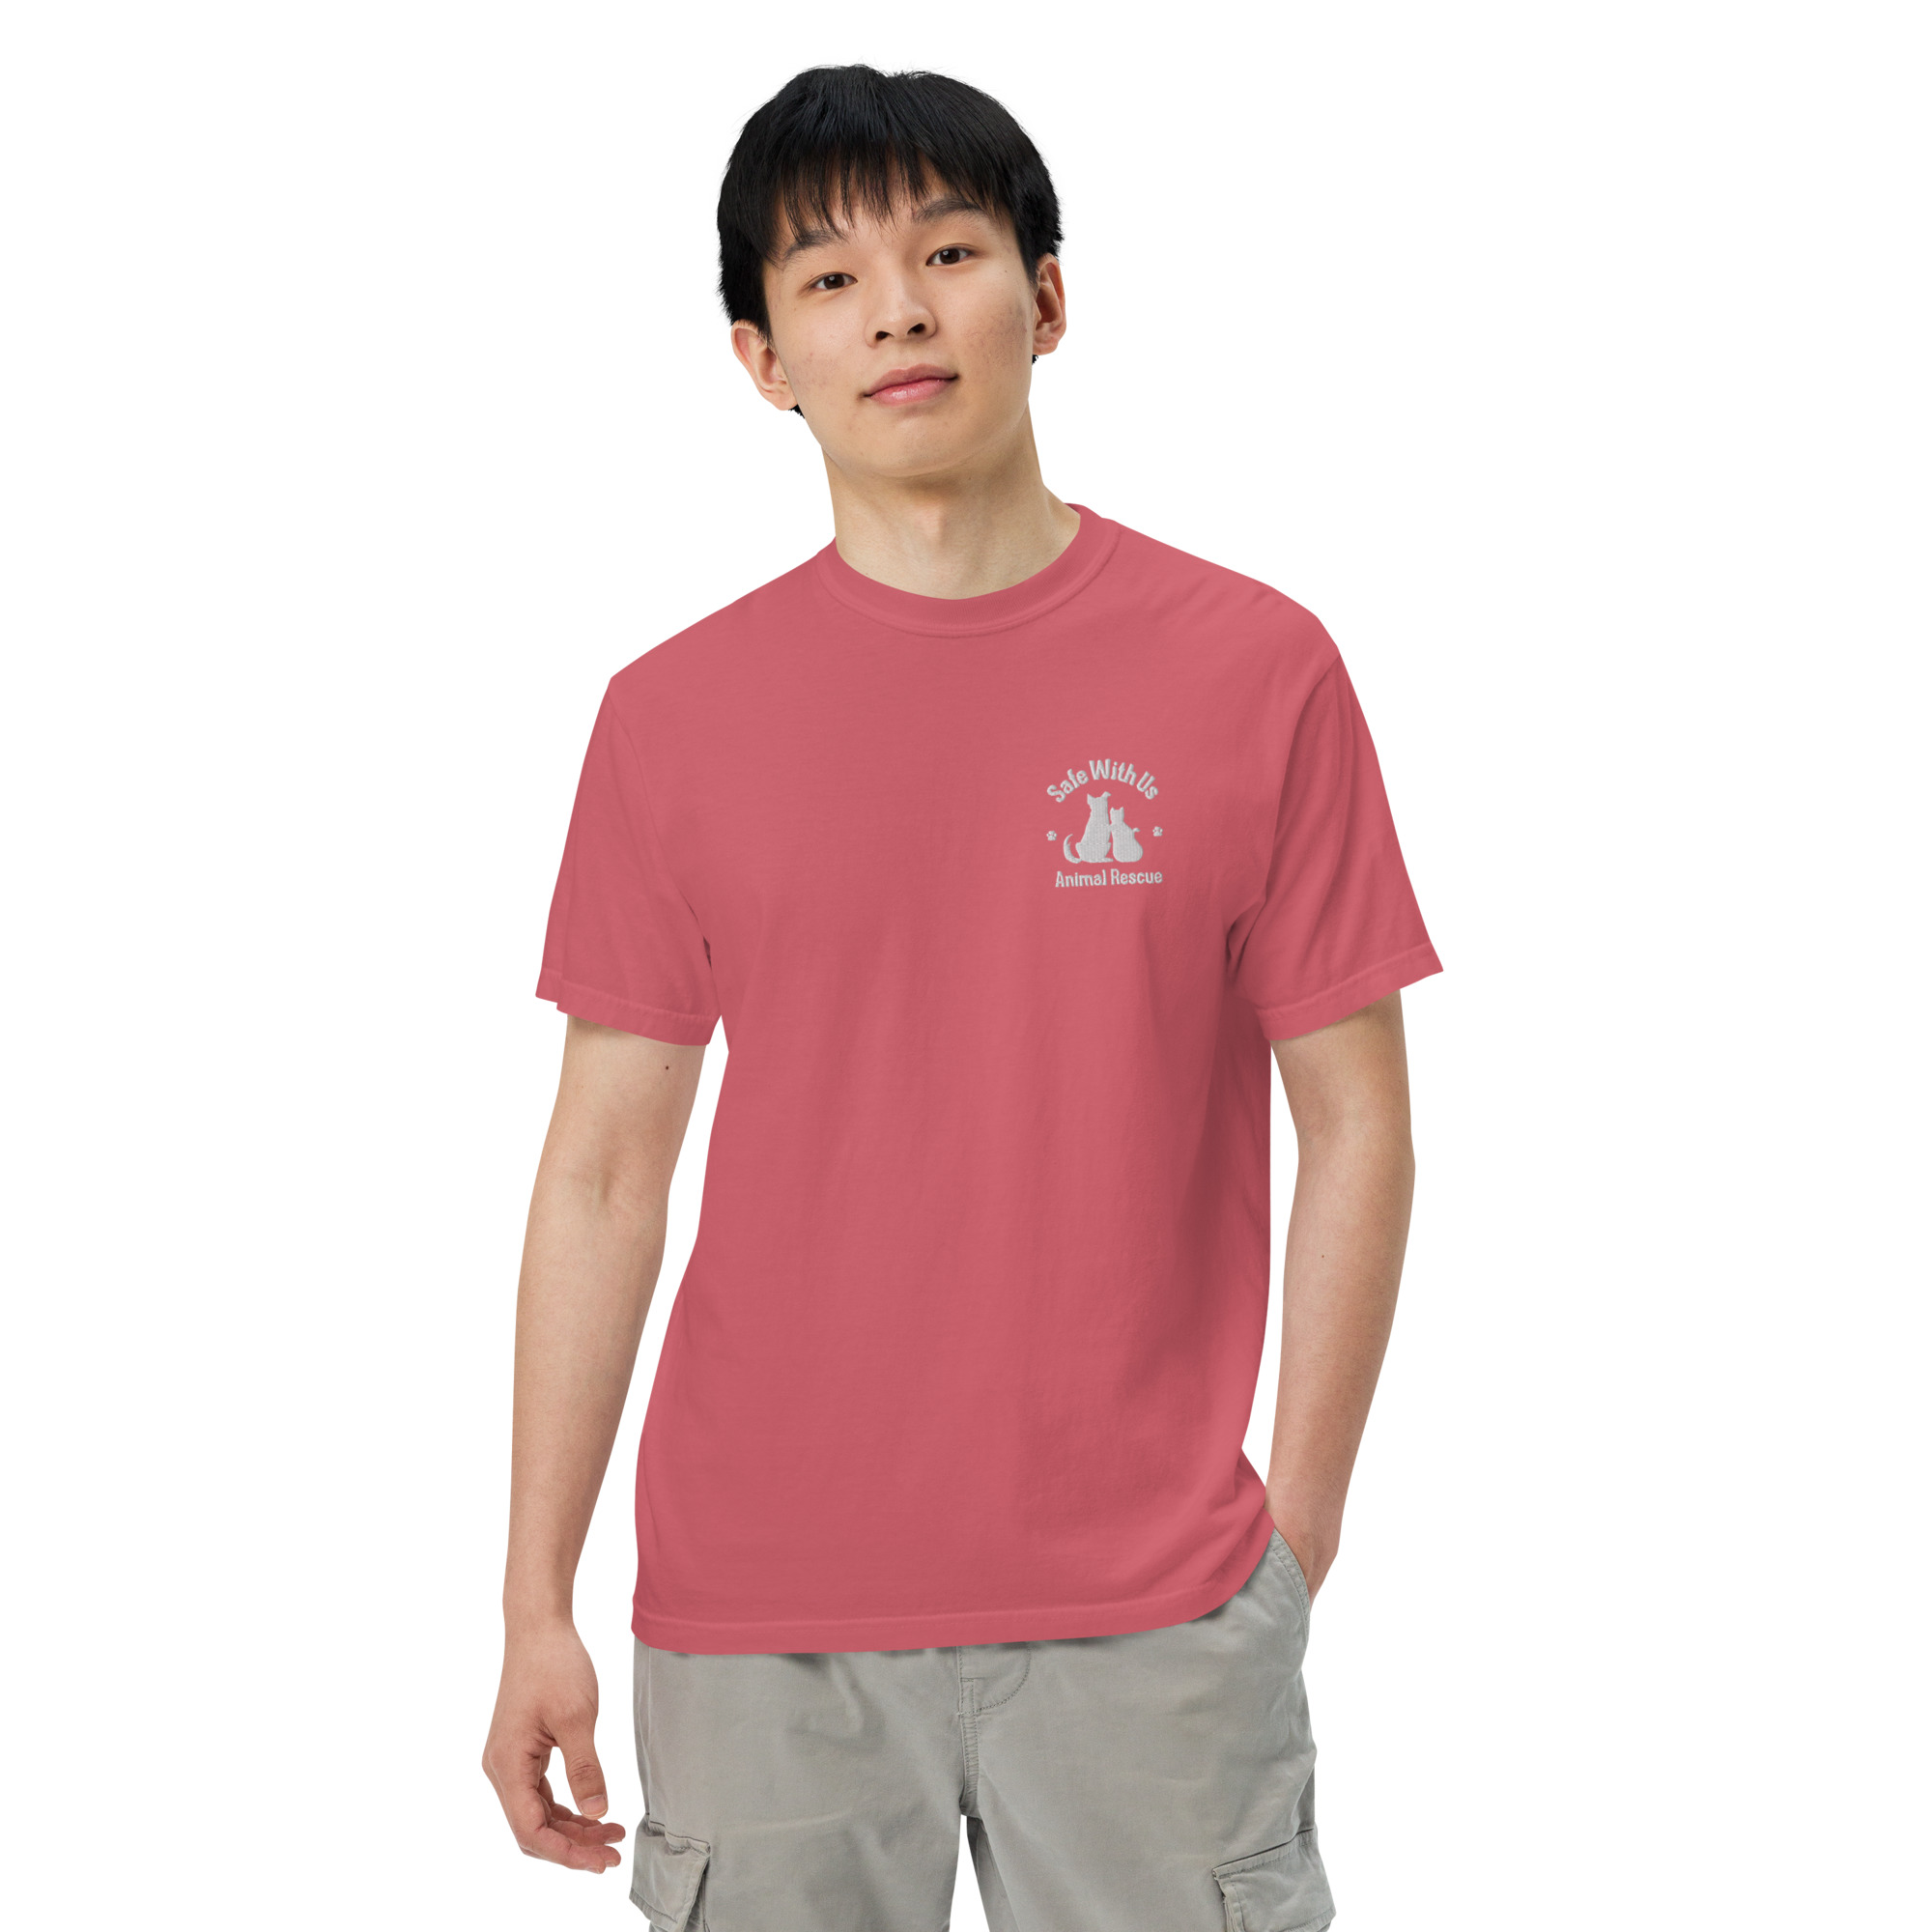 mens-garment-dyed-heavyweight-t-shirt-watermelon-front-2-6415fedc2a27b.jpg